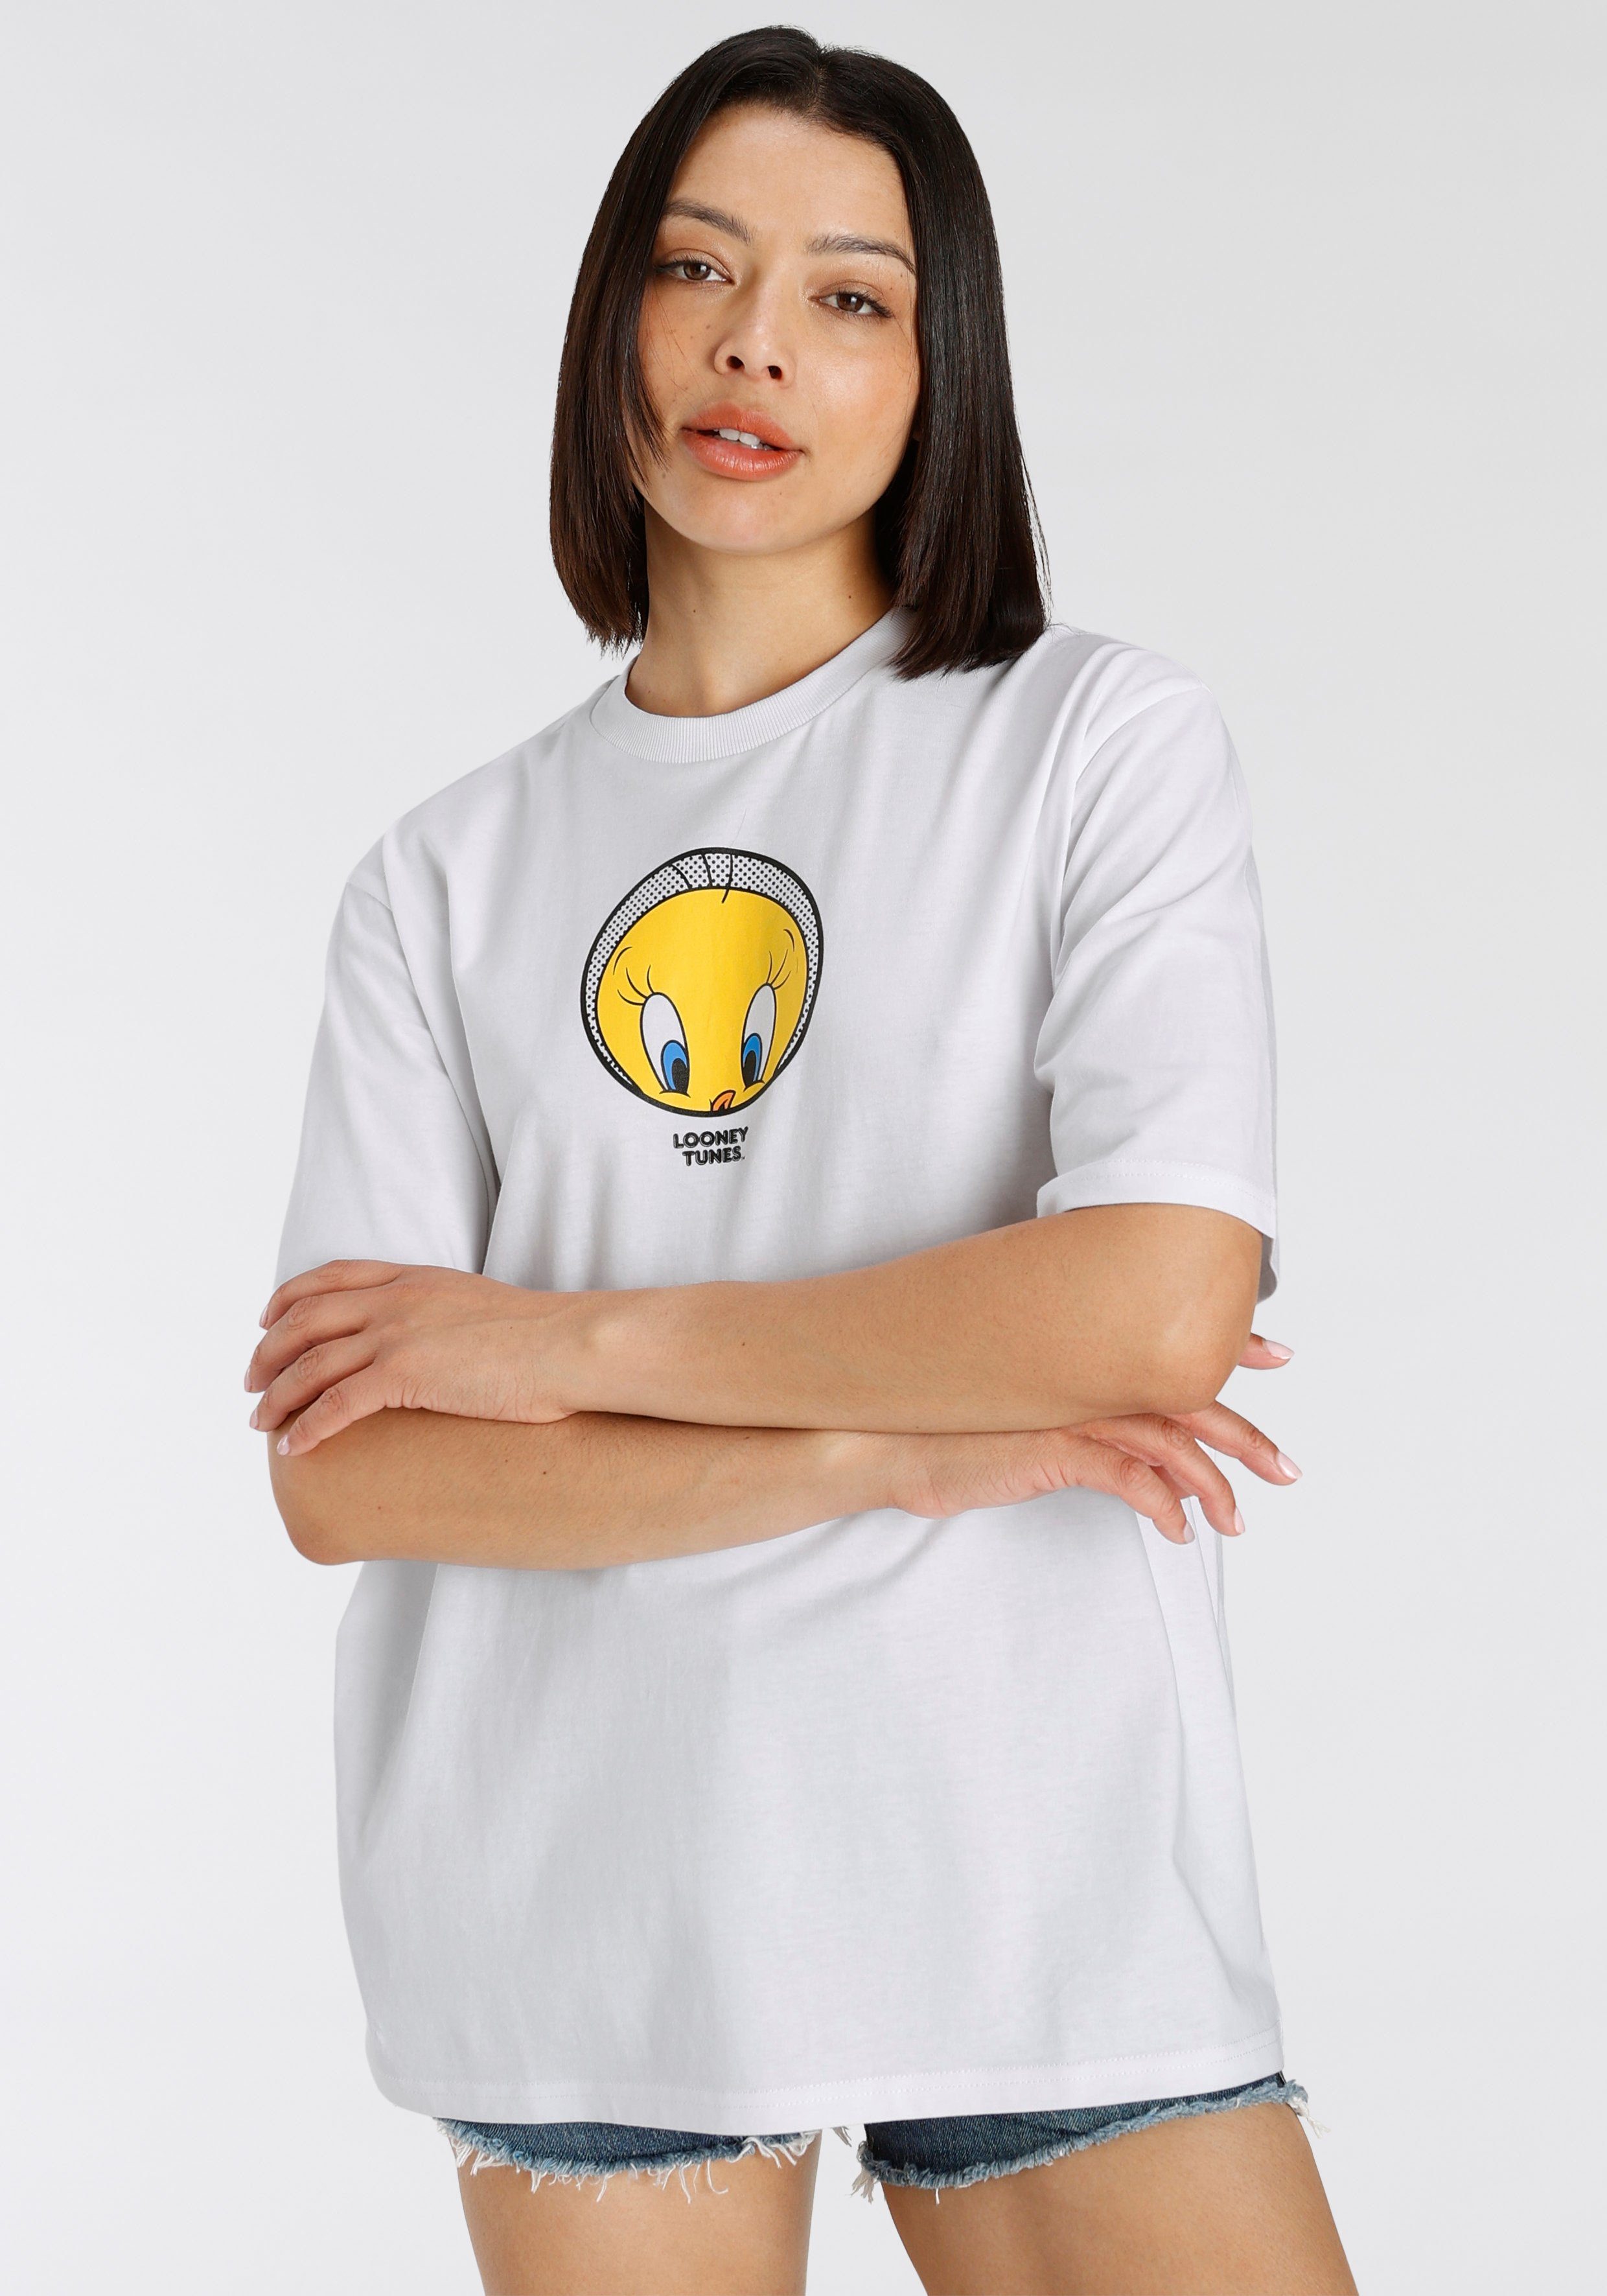 New T-Shirt Capelli T-Shirt white York Tweety